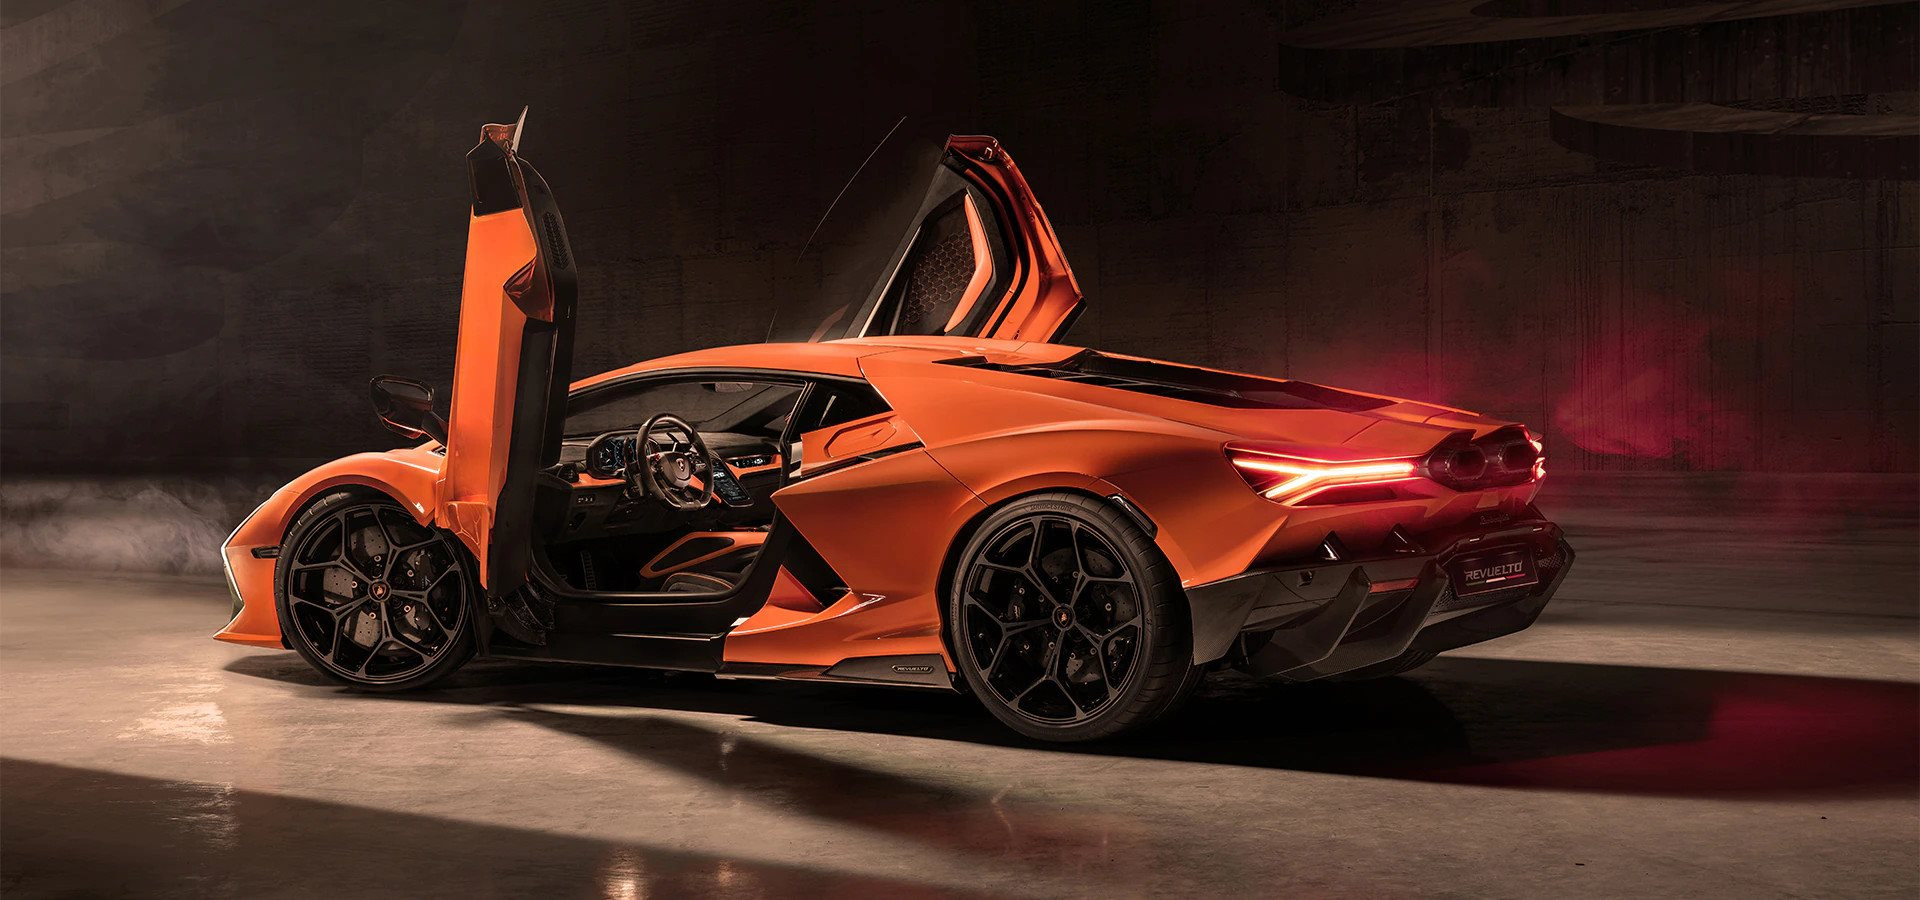 Siêu xe 21 tỷ đồng của Lamborghini có gì hot mà cháy hàng đến hết năm 2025, người giàu đến mấy cũng phải tranh nhau xếp hàng? - Ảnh 2.